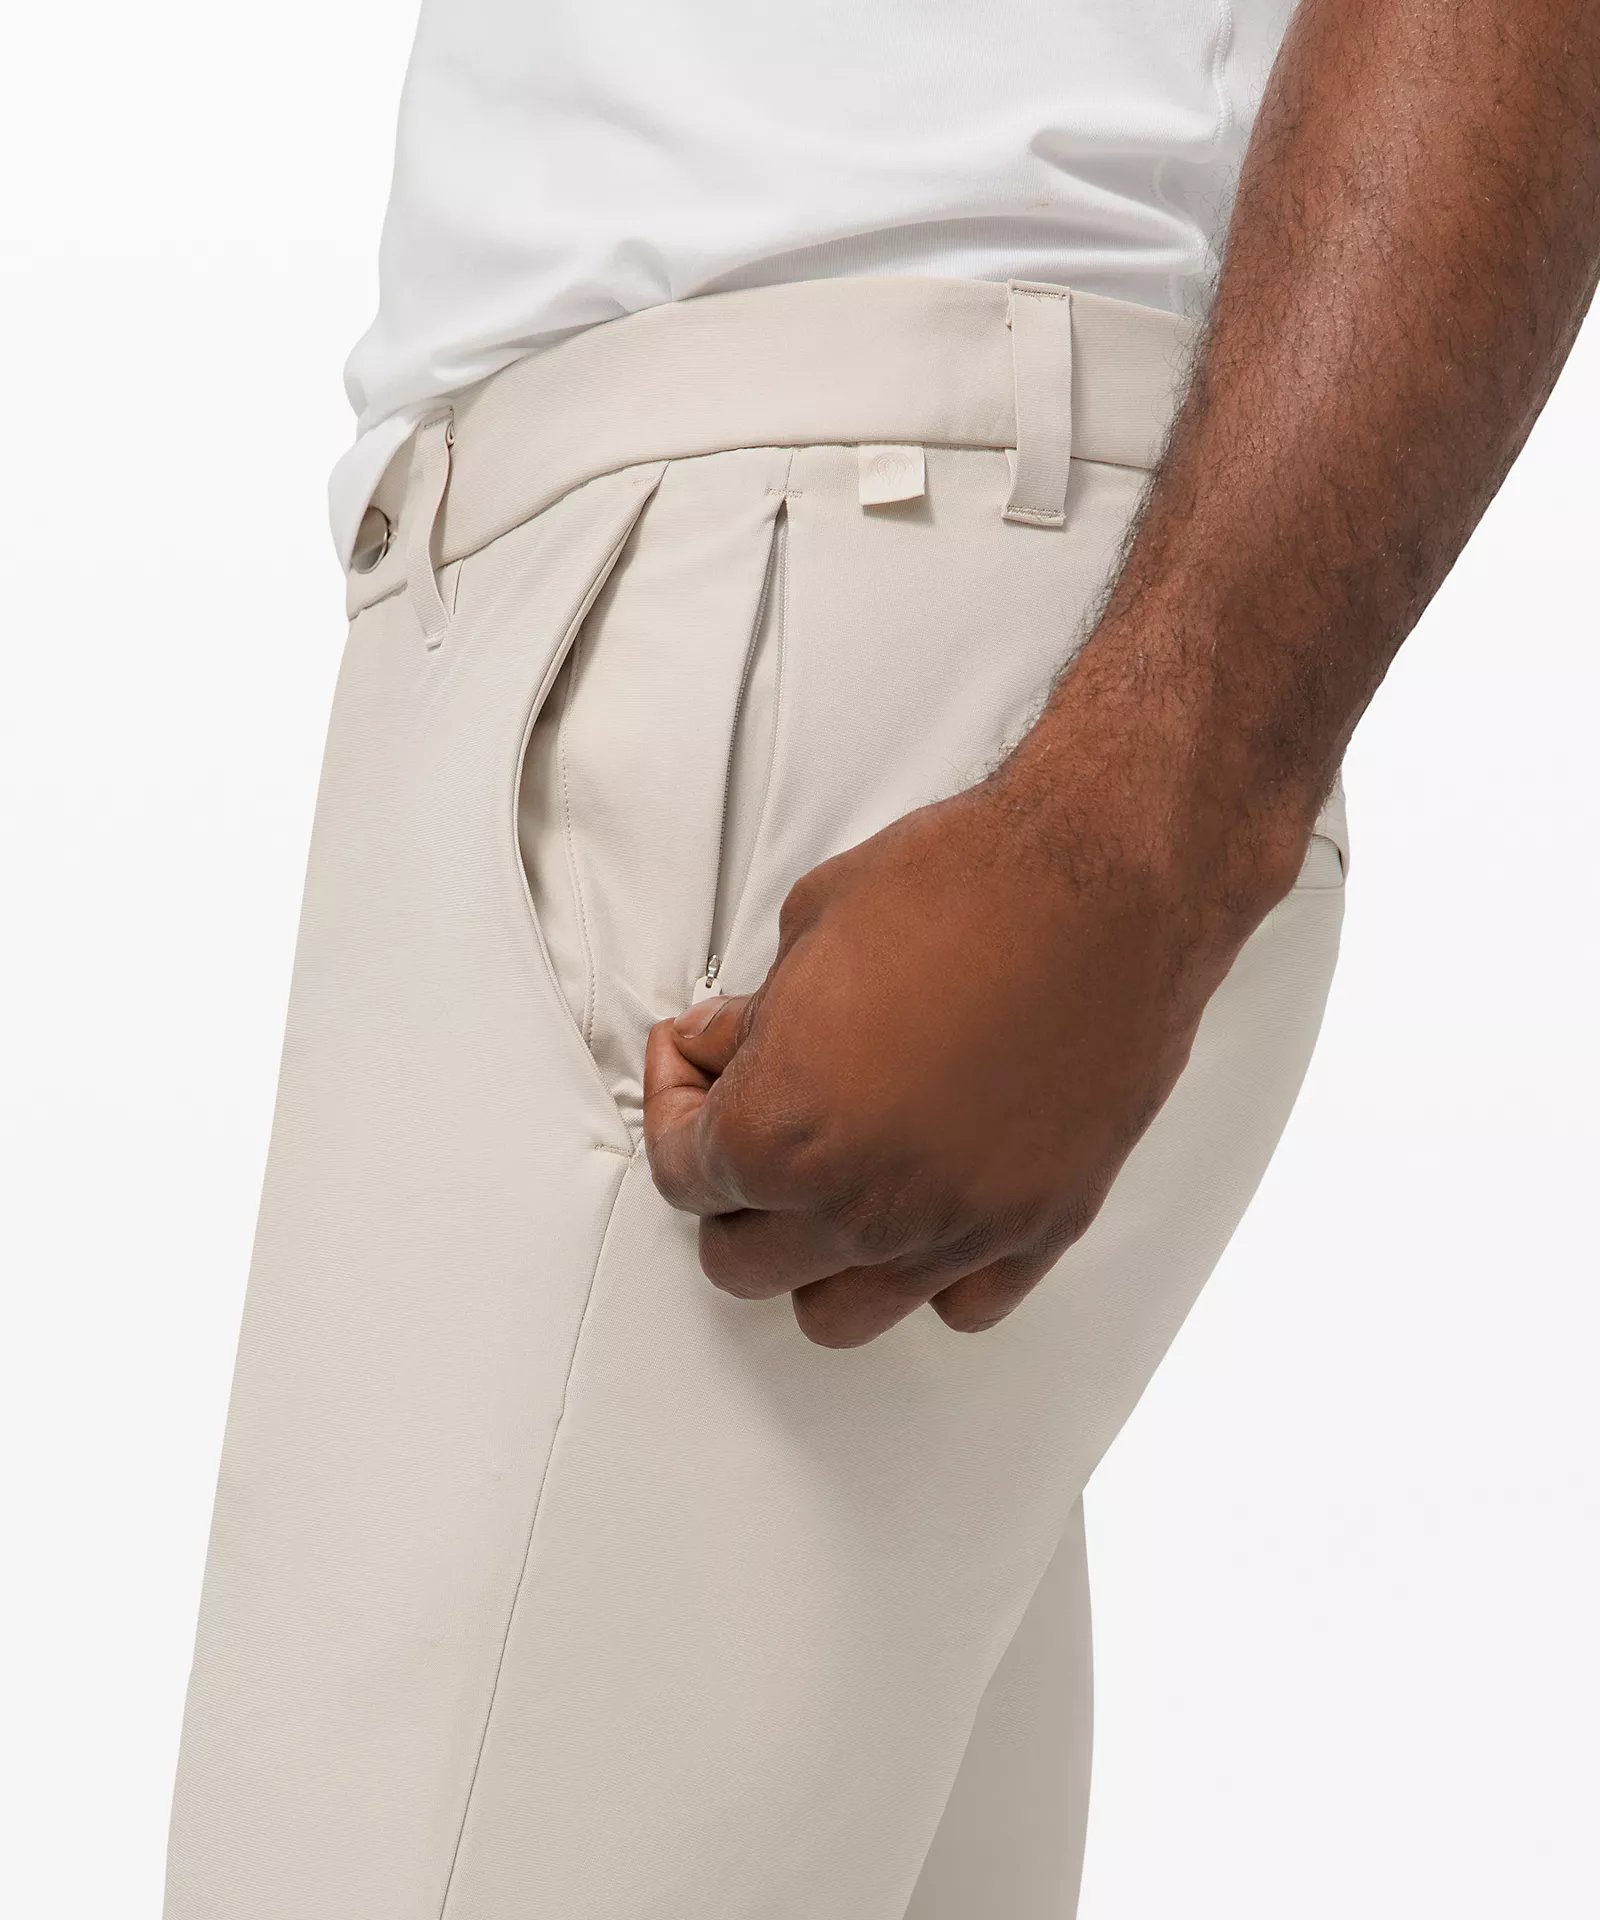 Fit Check: ABC Pants - Slim Fit vs Classic Fit : r/lululemon